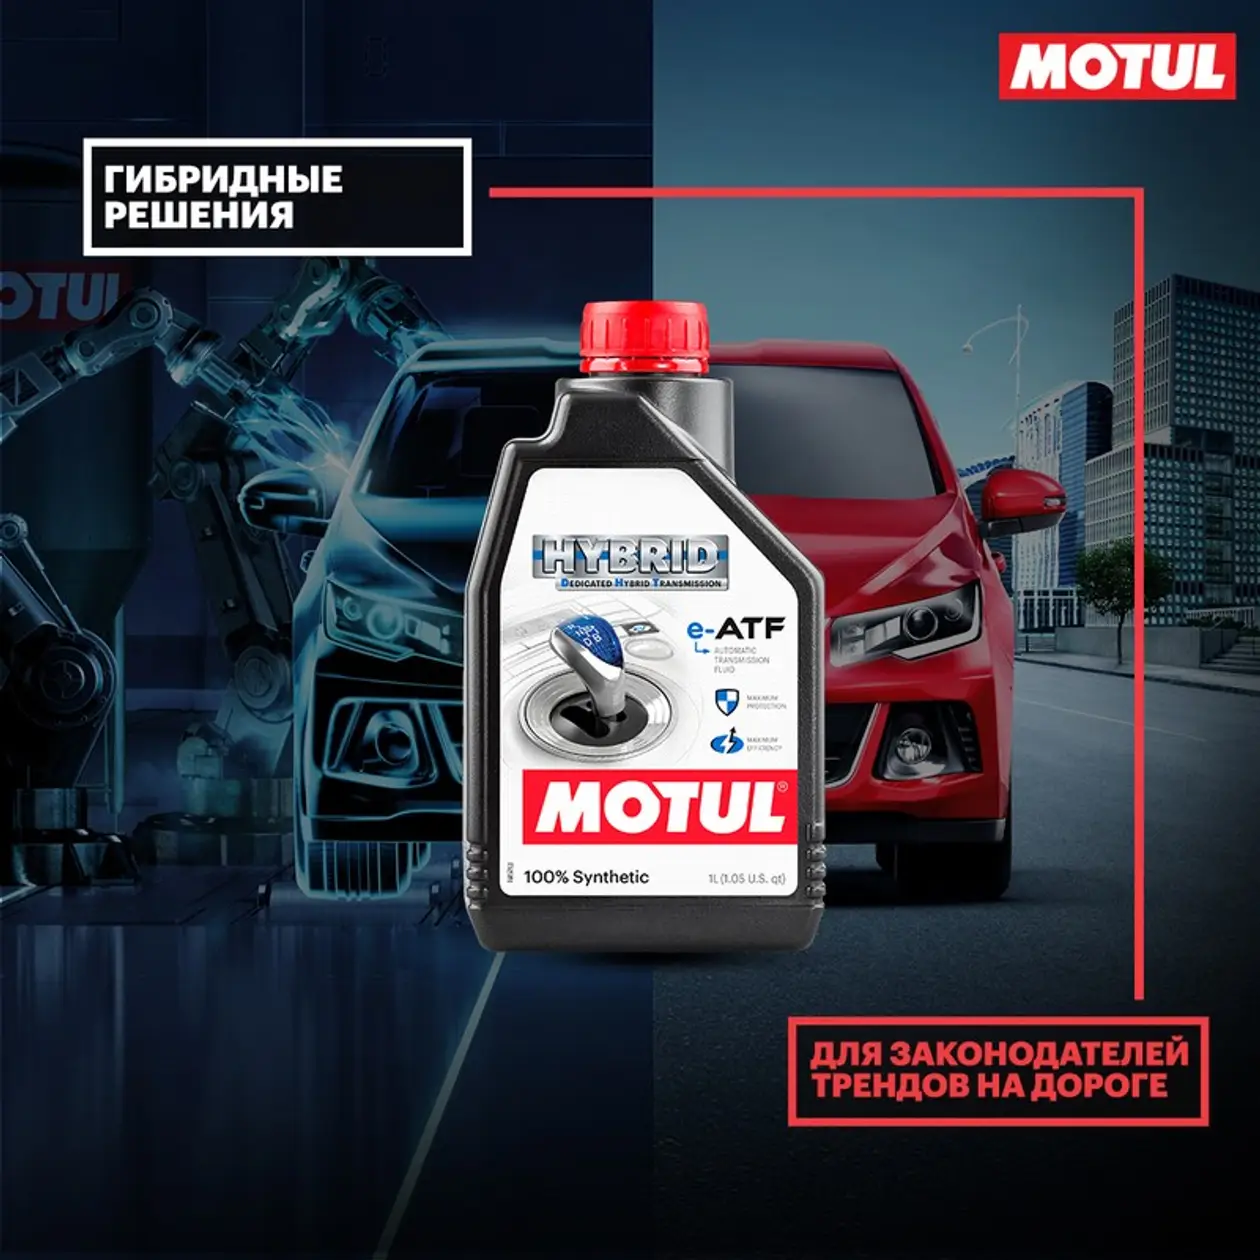 Motul представляет новую трансмиссионную жидкость Motul DHT e-ATF для электромобилей